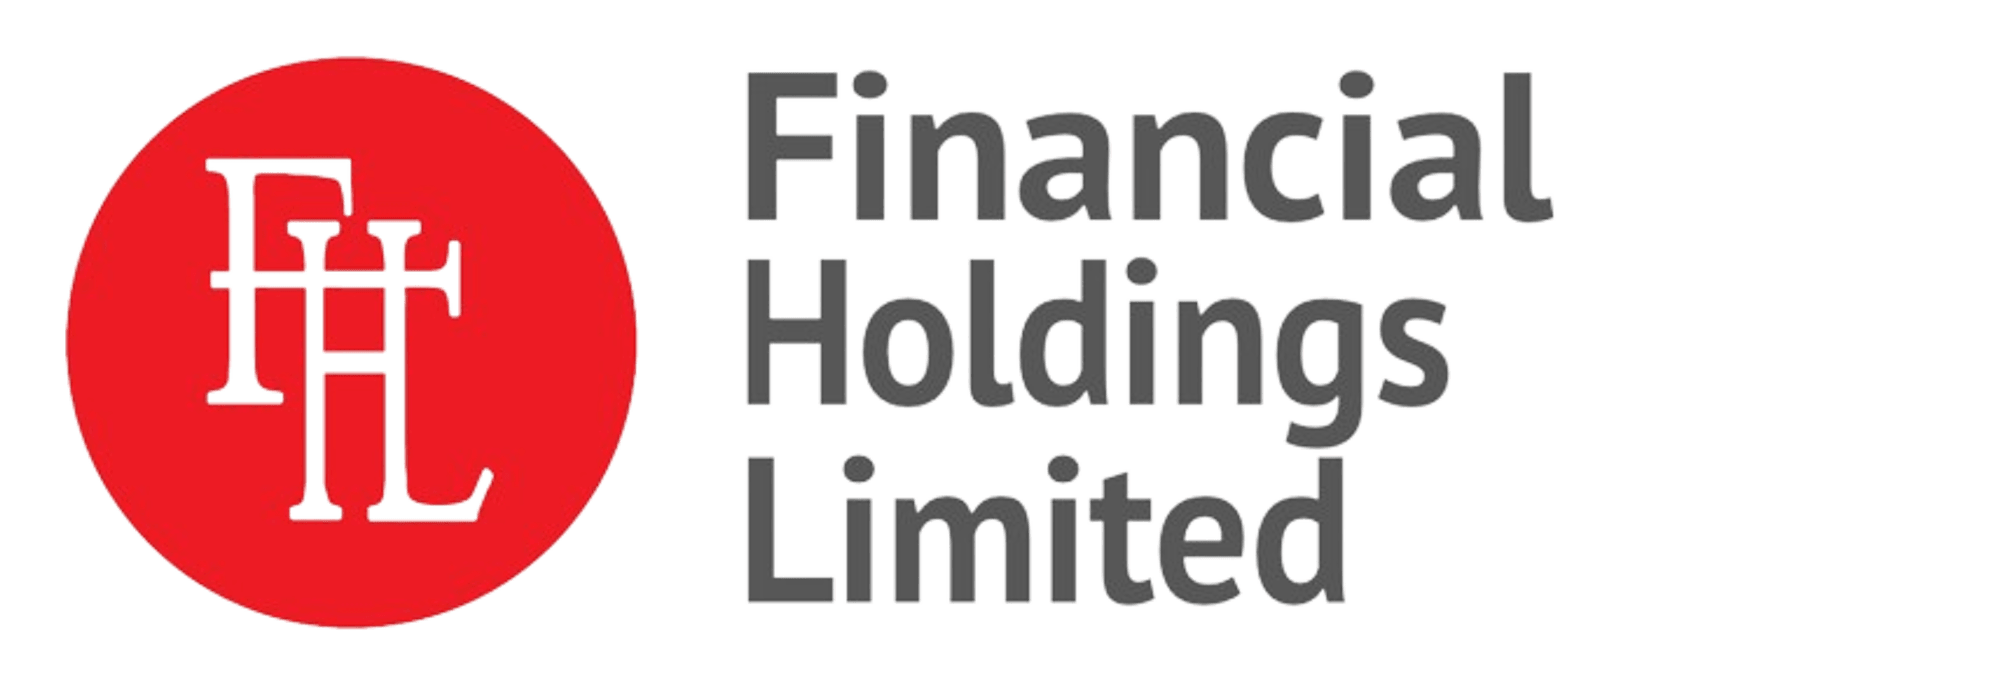 Financial Holdings Ltd